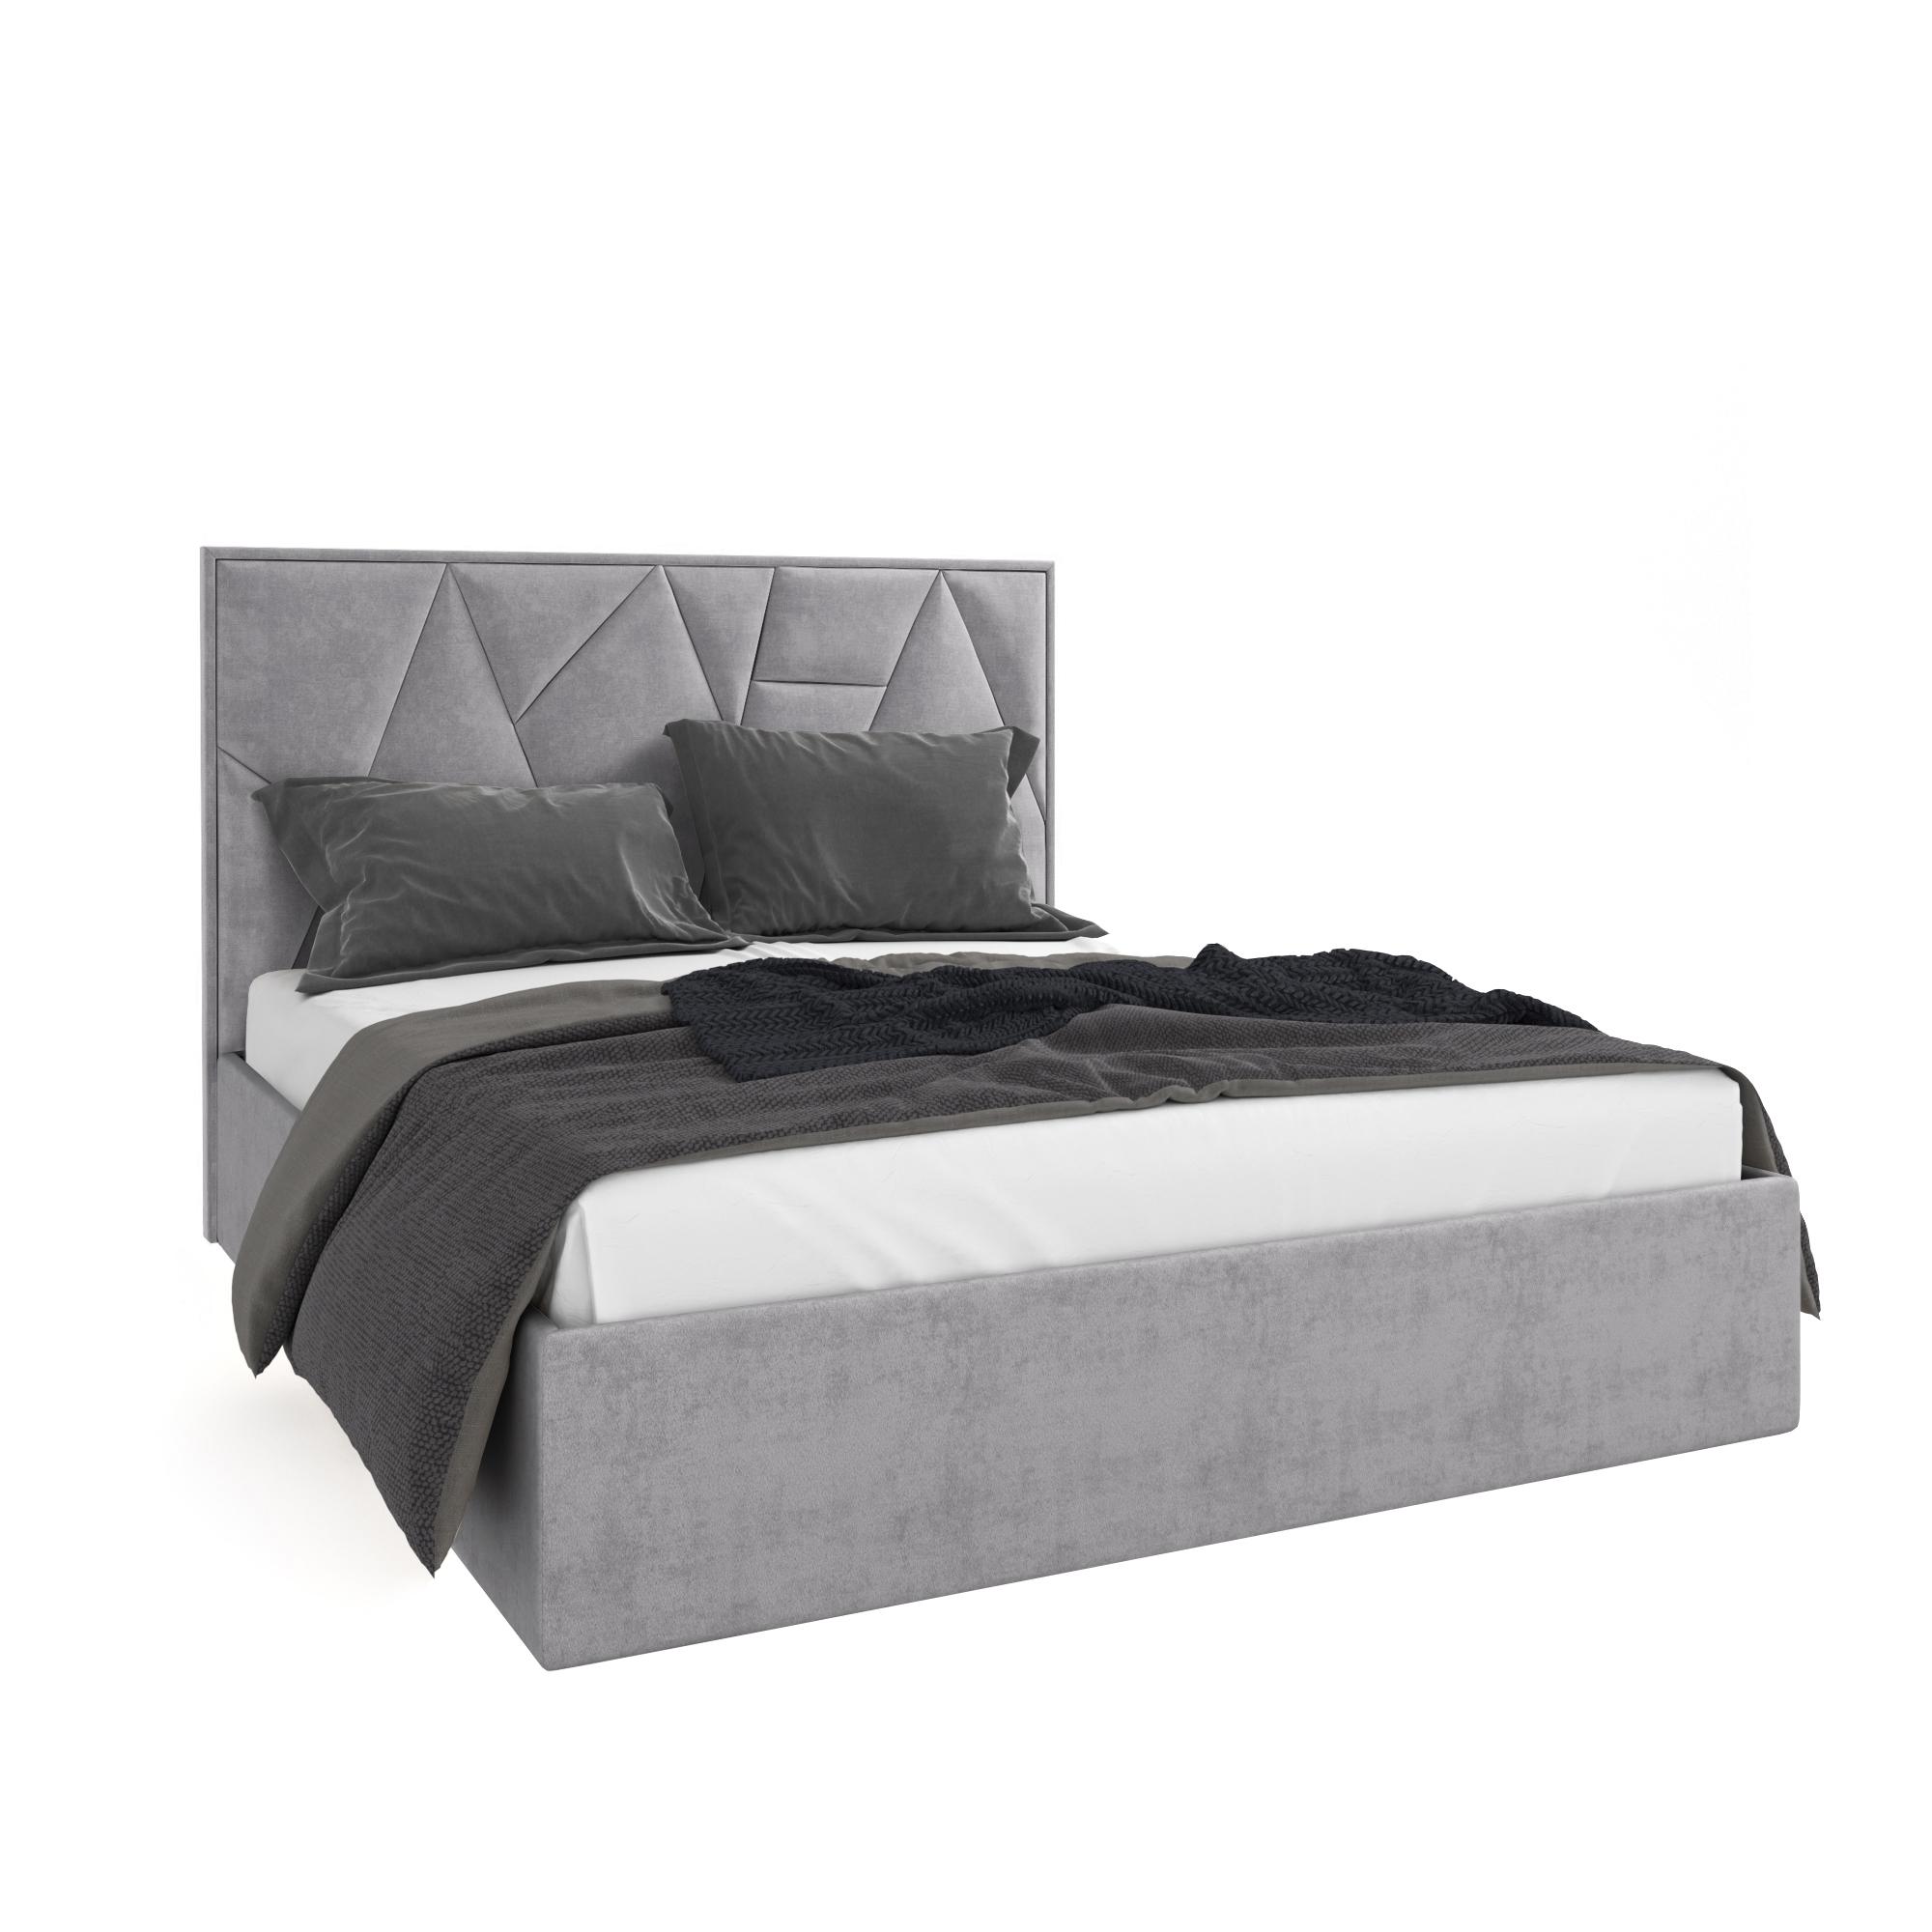 Кровать Липси серый 160х200 изображение товара